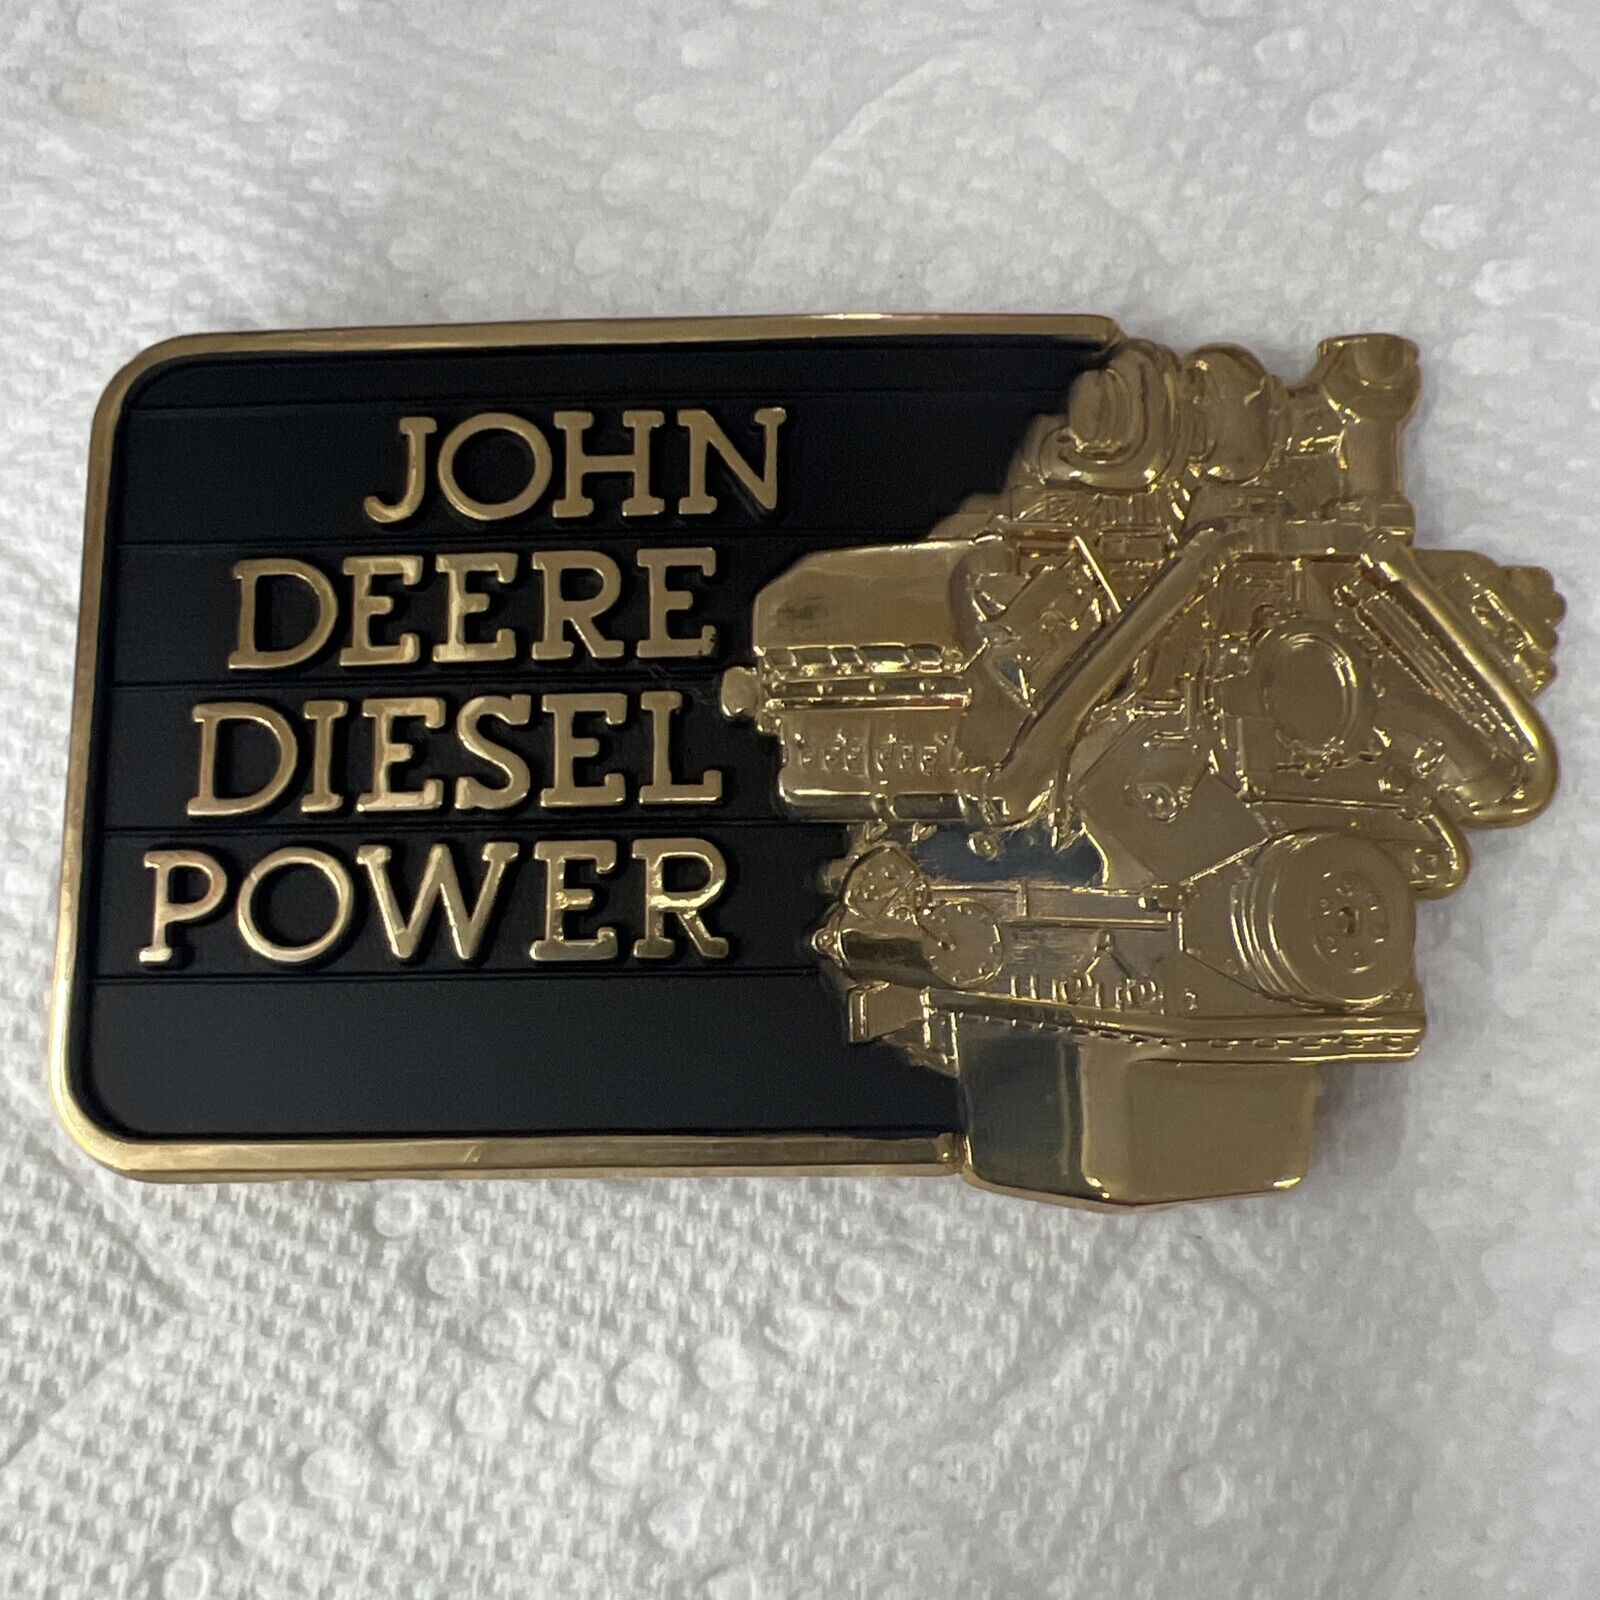 Vintage 1982 John Deere DIESEL POWER Engine Belt Buckle Gold & Black